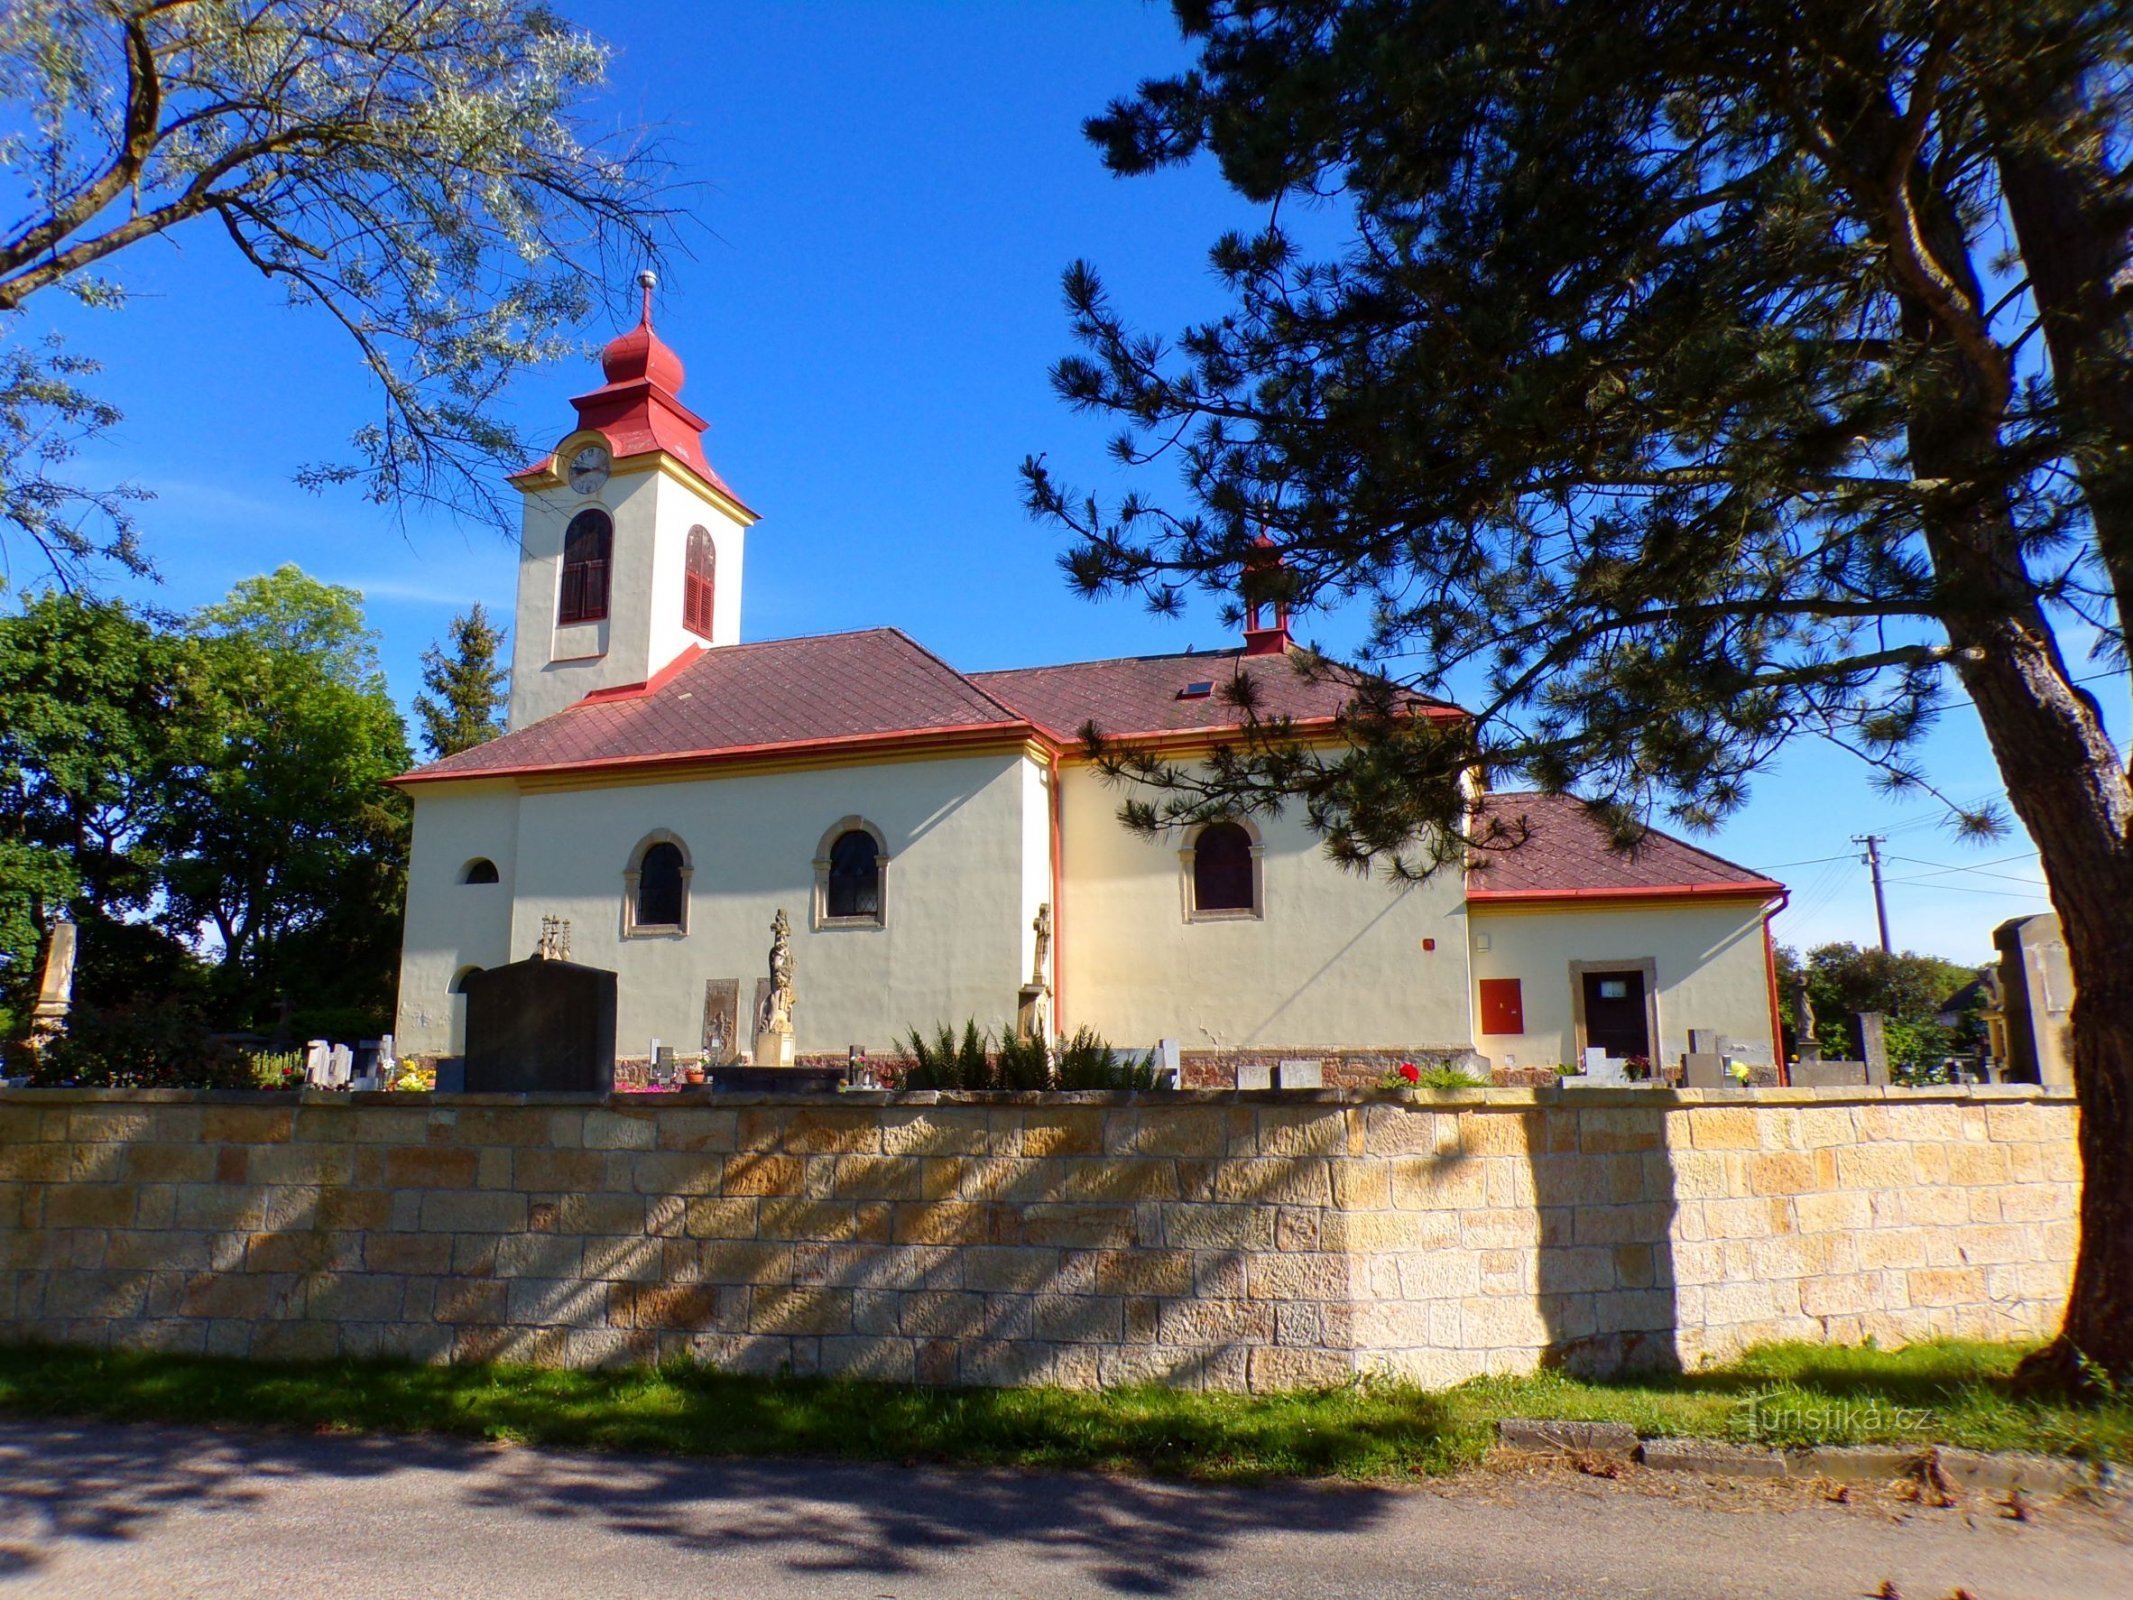 Nhà thờ St. Nicholas, giám mục (Choteč, 31.5.2022)